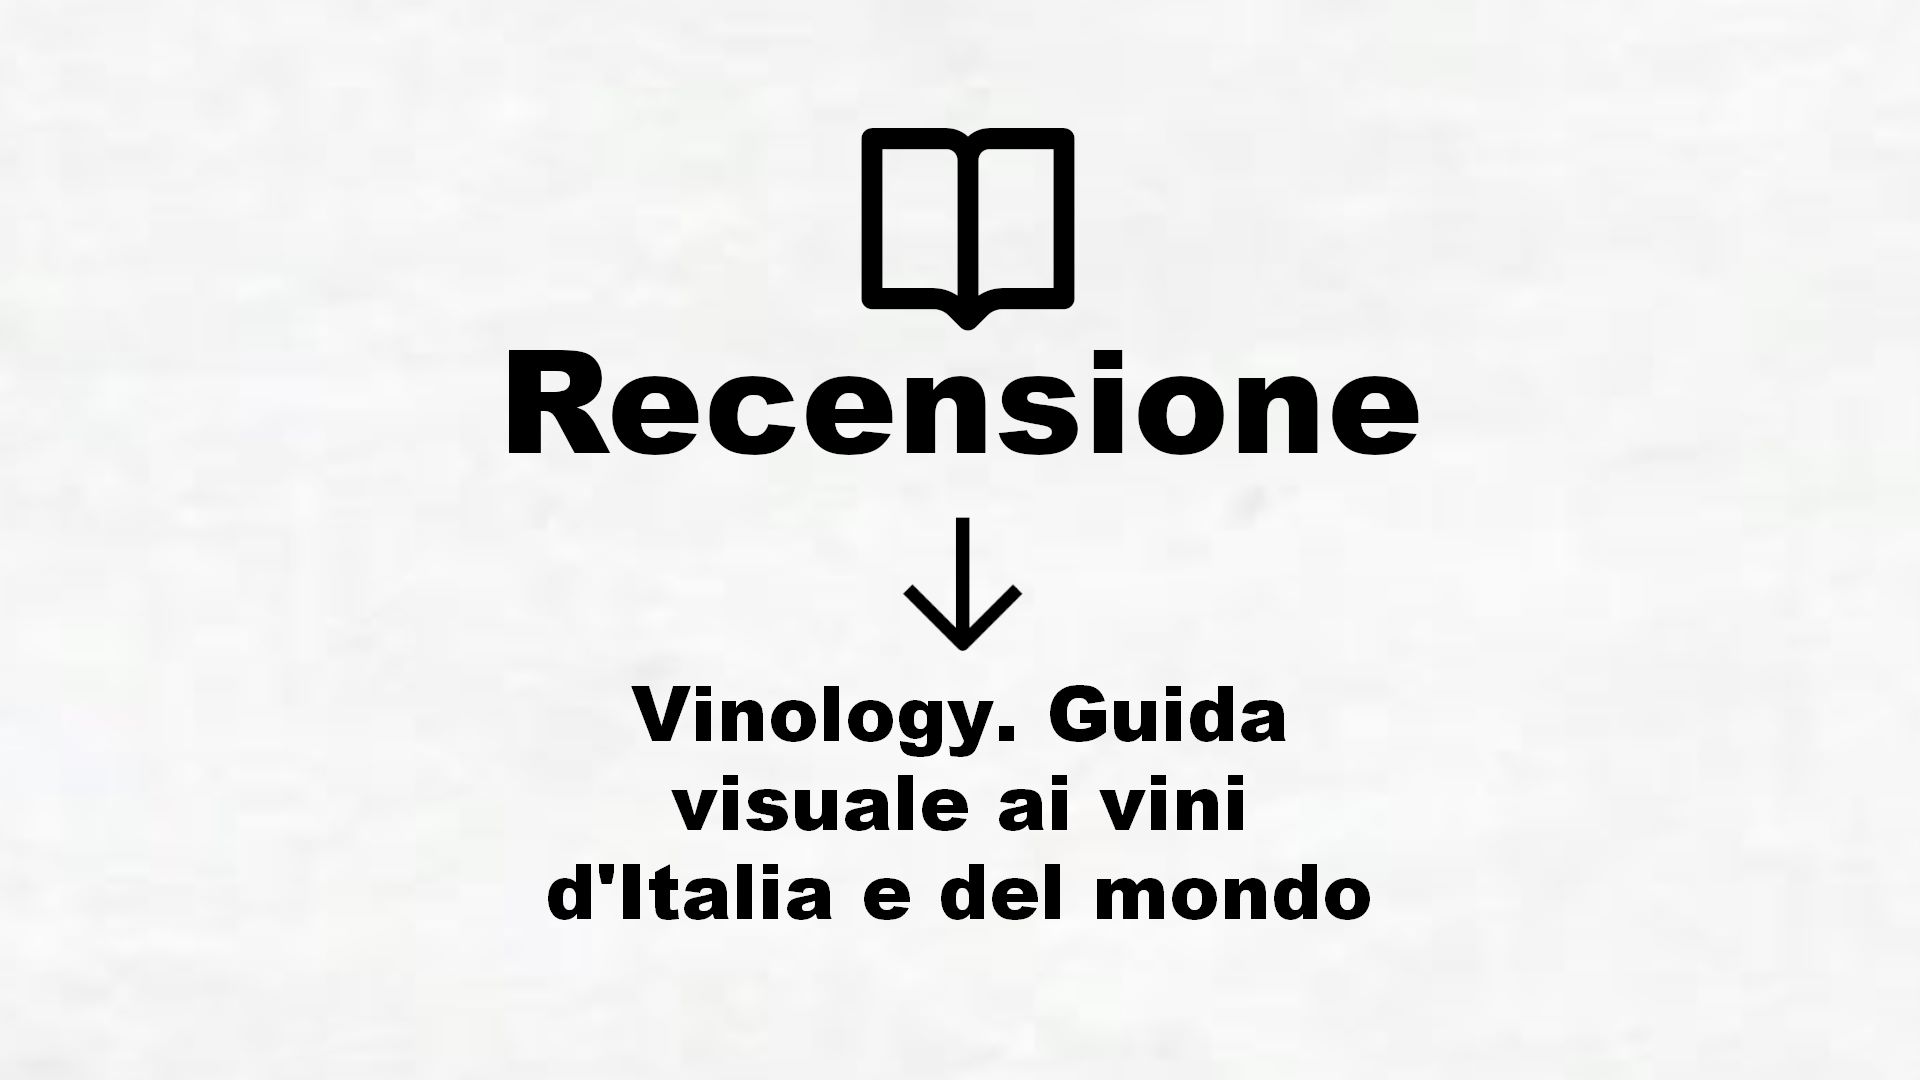 Vinology. Guida visuale ai vini d’Italia e del mondo – Recensione Libro